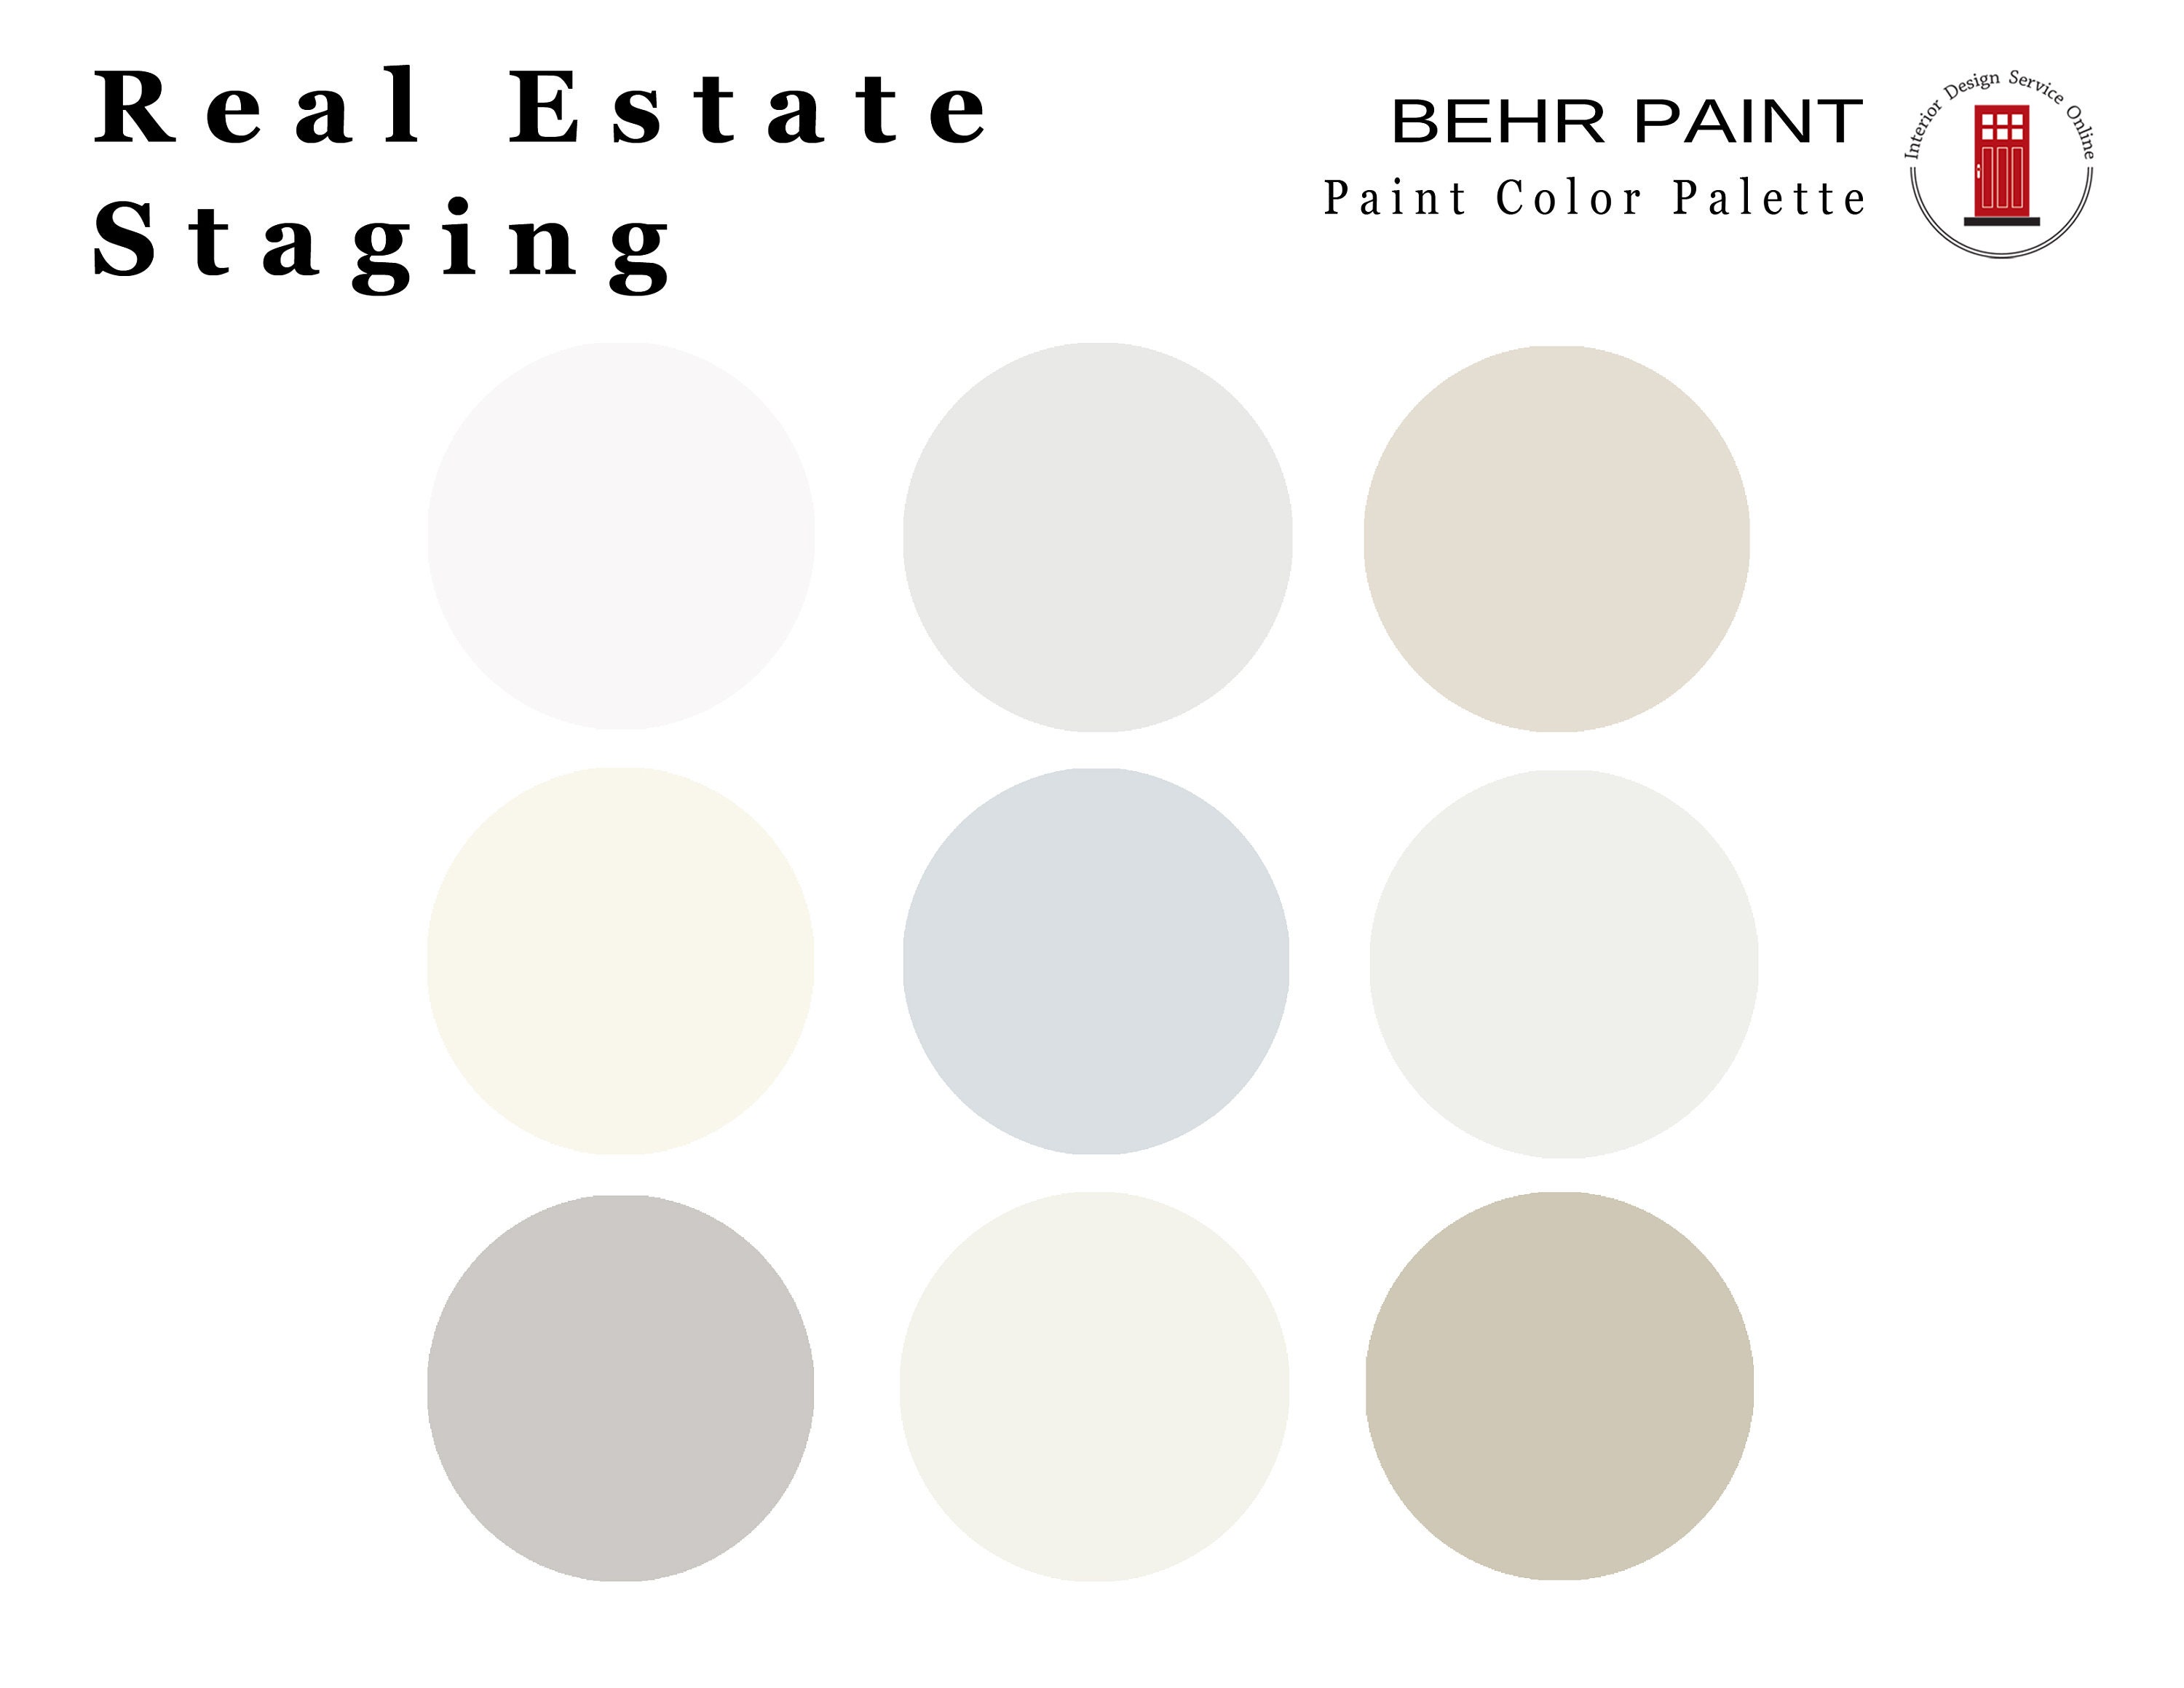 Real Estate Staging Paint Colors Home Re sale Paint Scheme ...